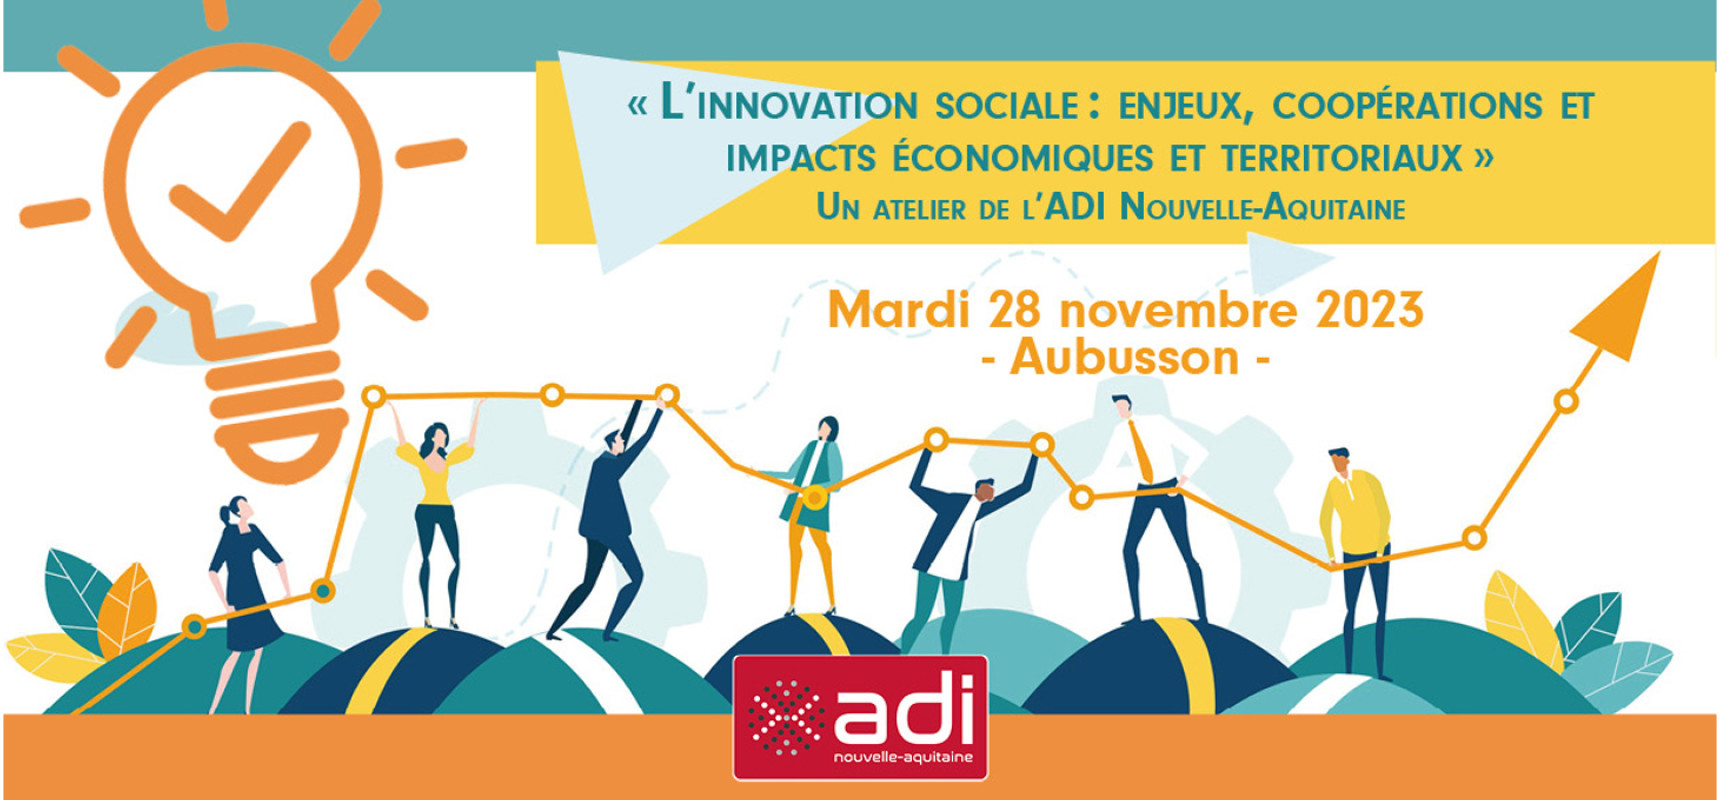 [LesRencontresÉco] Mois de l’ESS – Atelier de sensibilisation à l’Innovation Sociale en Creuse – mardi 28 novembre 2023 #Aubusson #ADI